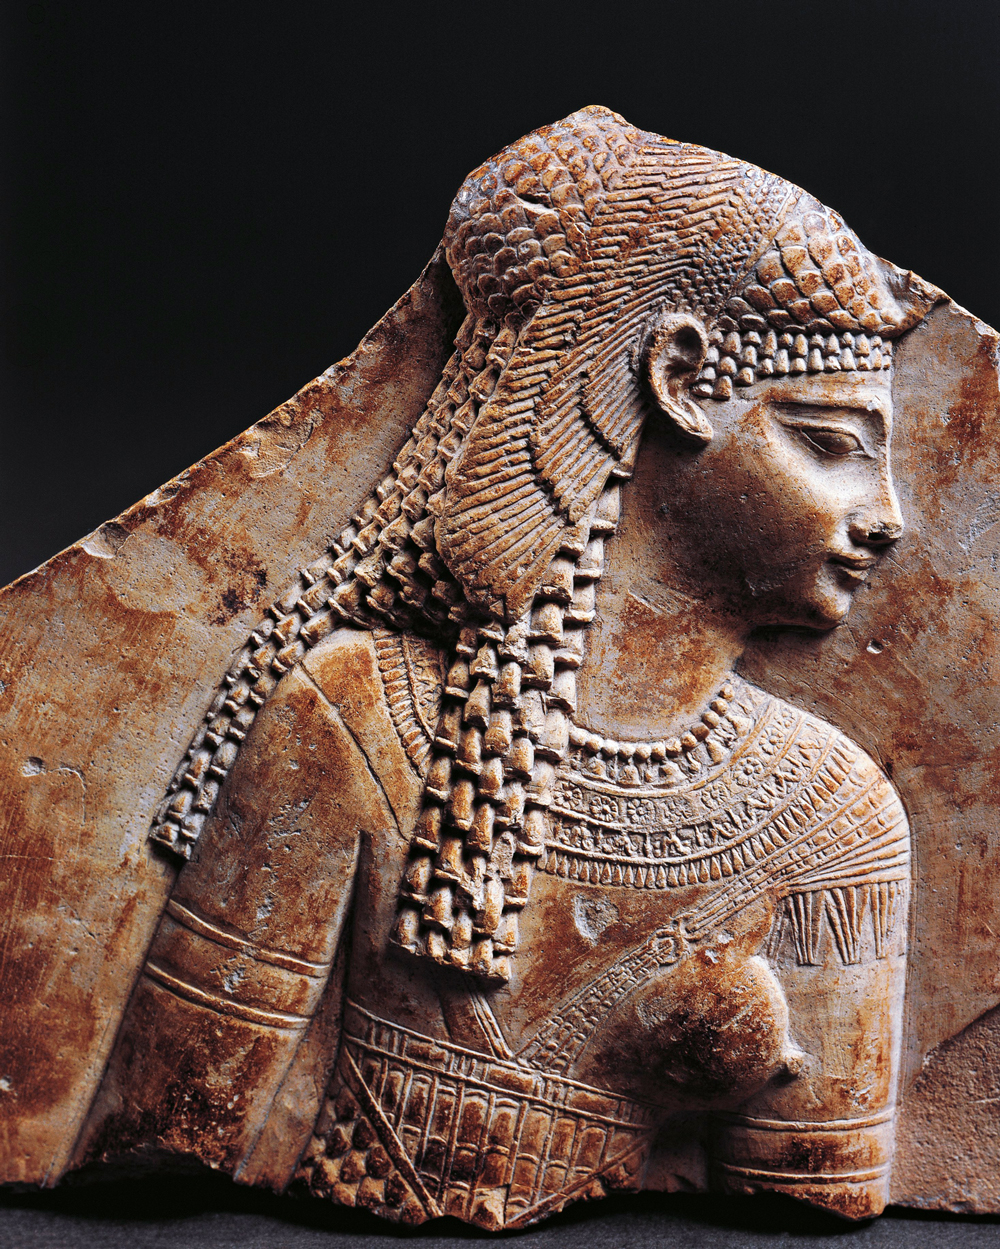 POR TRÁS DO MITO - Busto em relevo feito entre III e I a.C.: mulher que desafiou as ideias de submissão